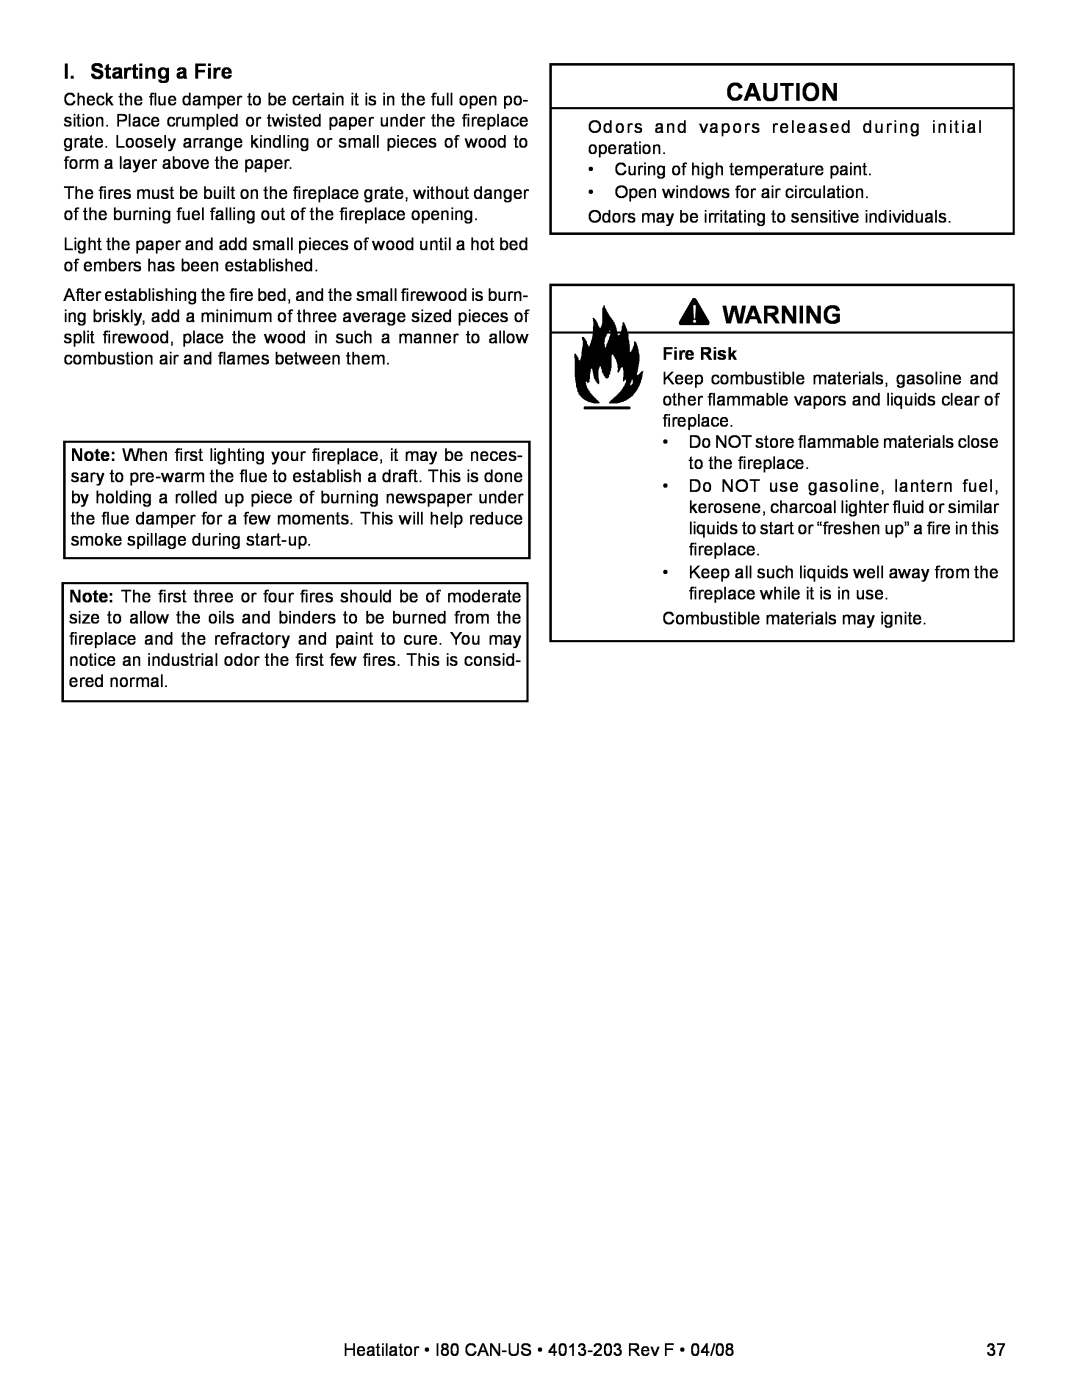 Heatiator I80 owner manual I. Starting a Fire, Fire Risk 